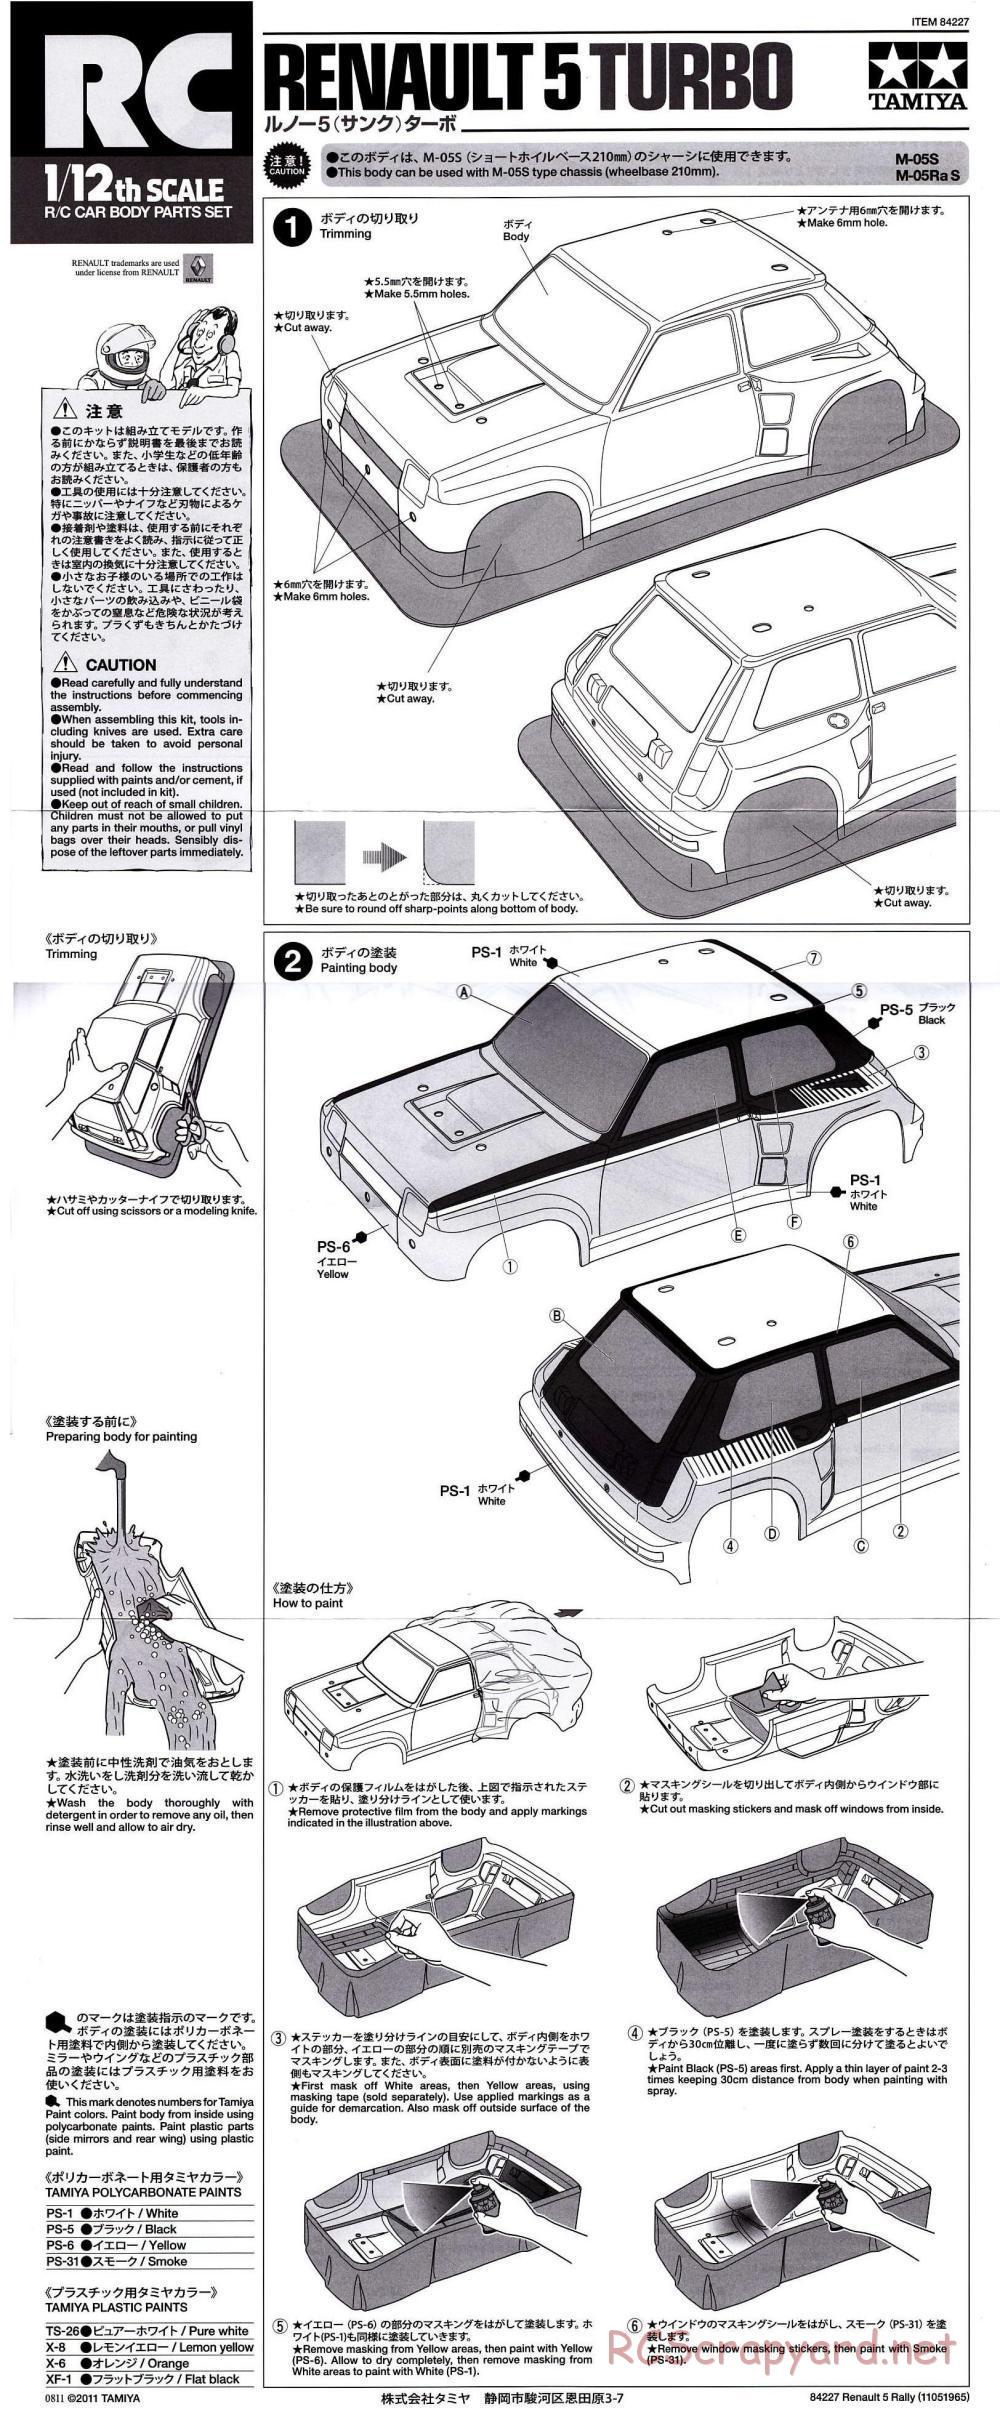 Tamiya - Renault 5 Turbo Rally - M-05Ra Chassis - Body Manual - Page 1